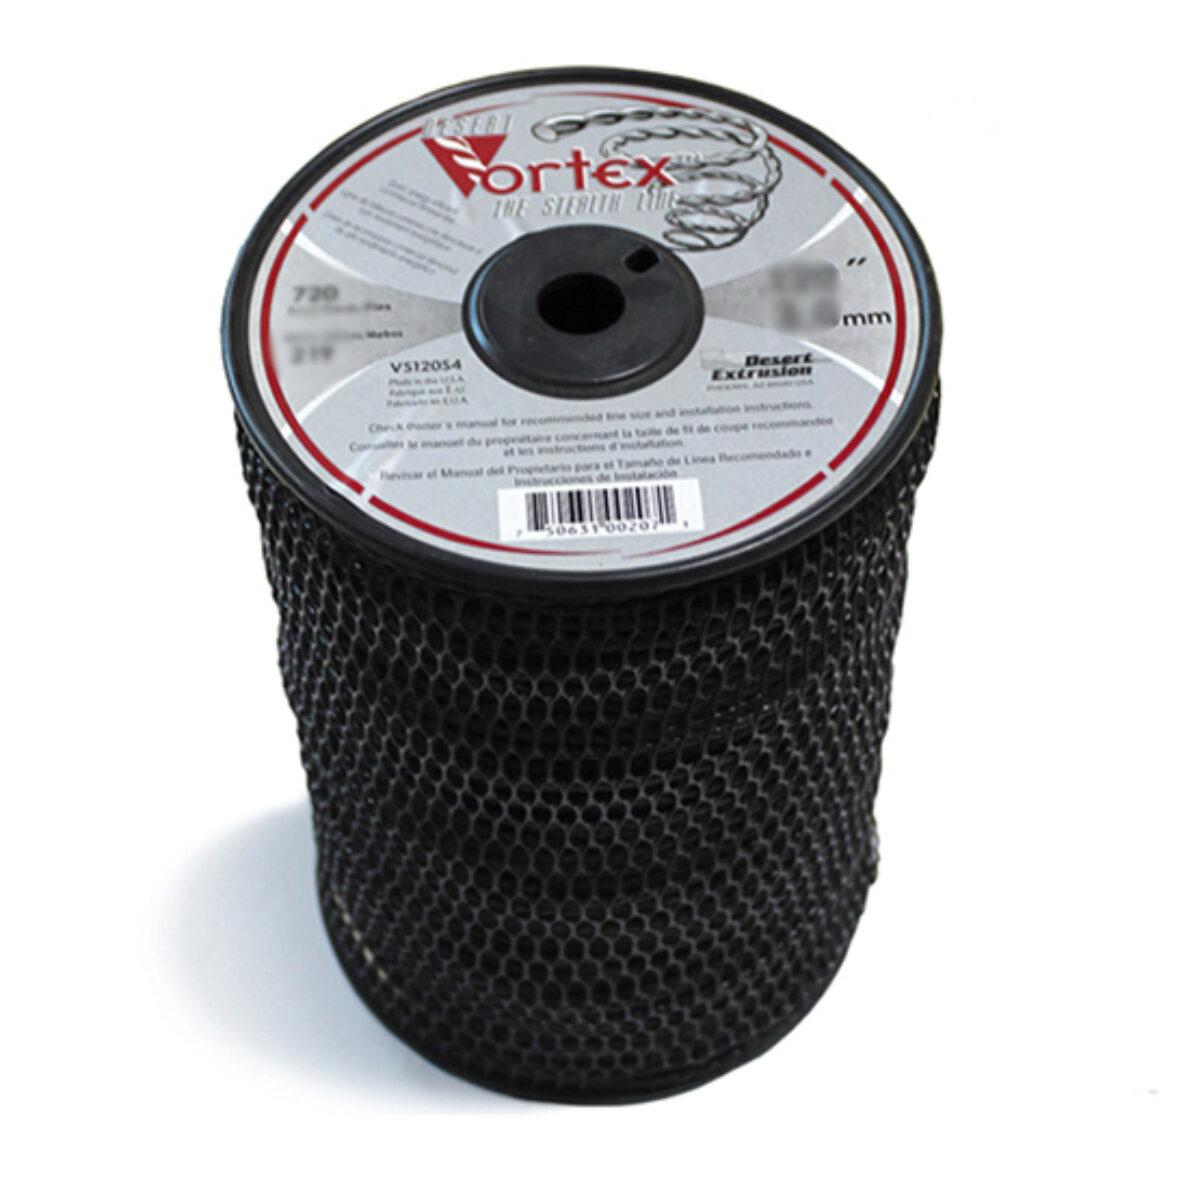 Hilo nylon VORTEX trenzado 4.3 mm x 110 m - Mejor precio - Agrocor